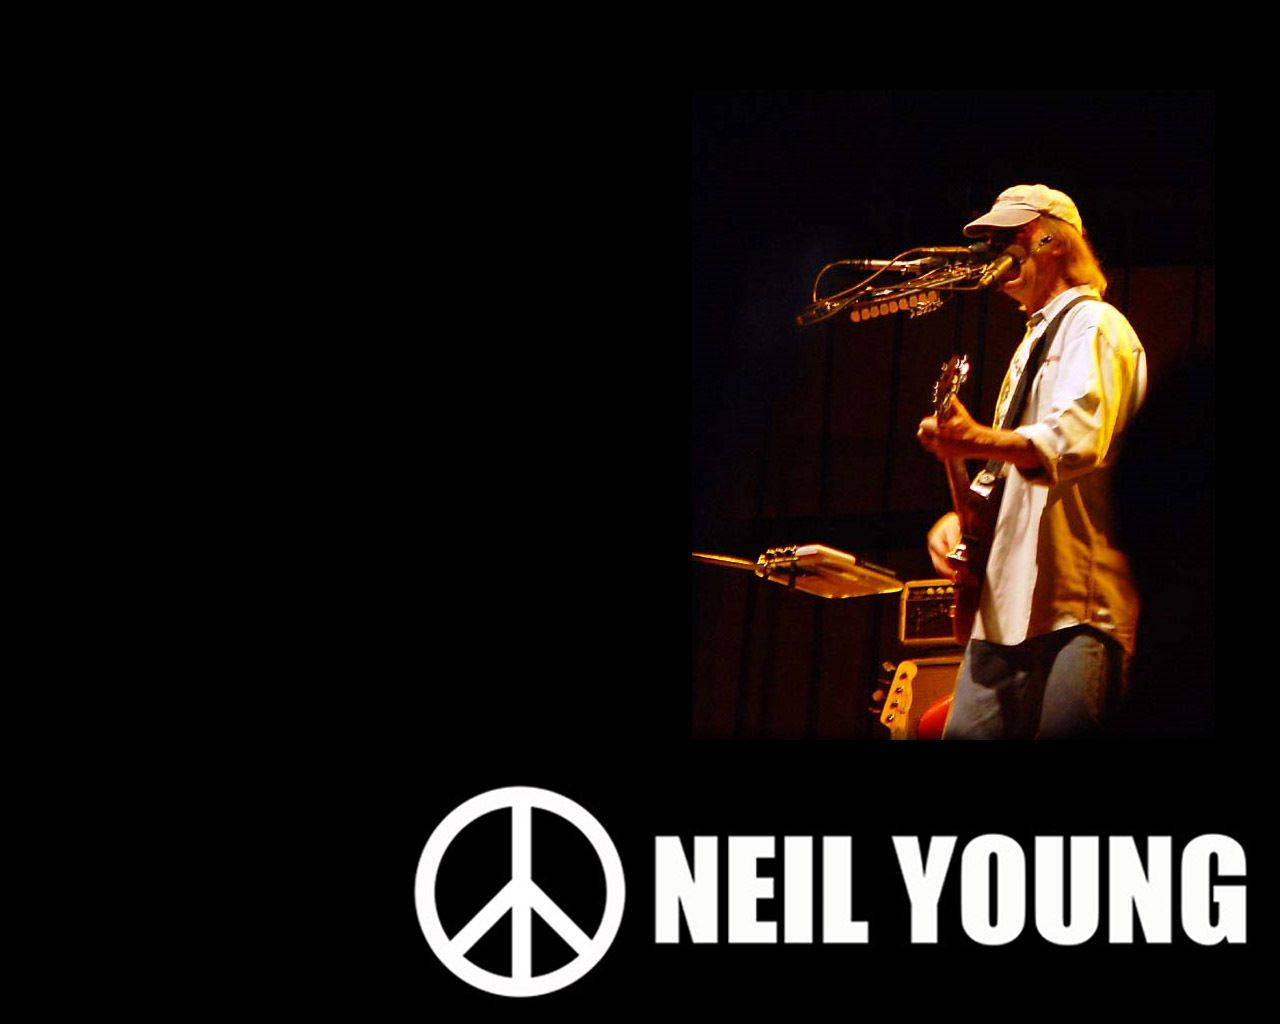 Music Legend Neil Young Digital Art Wallpaper